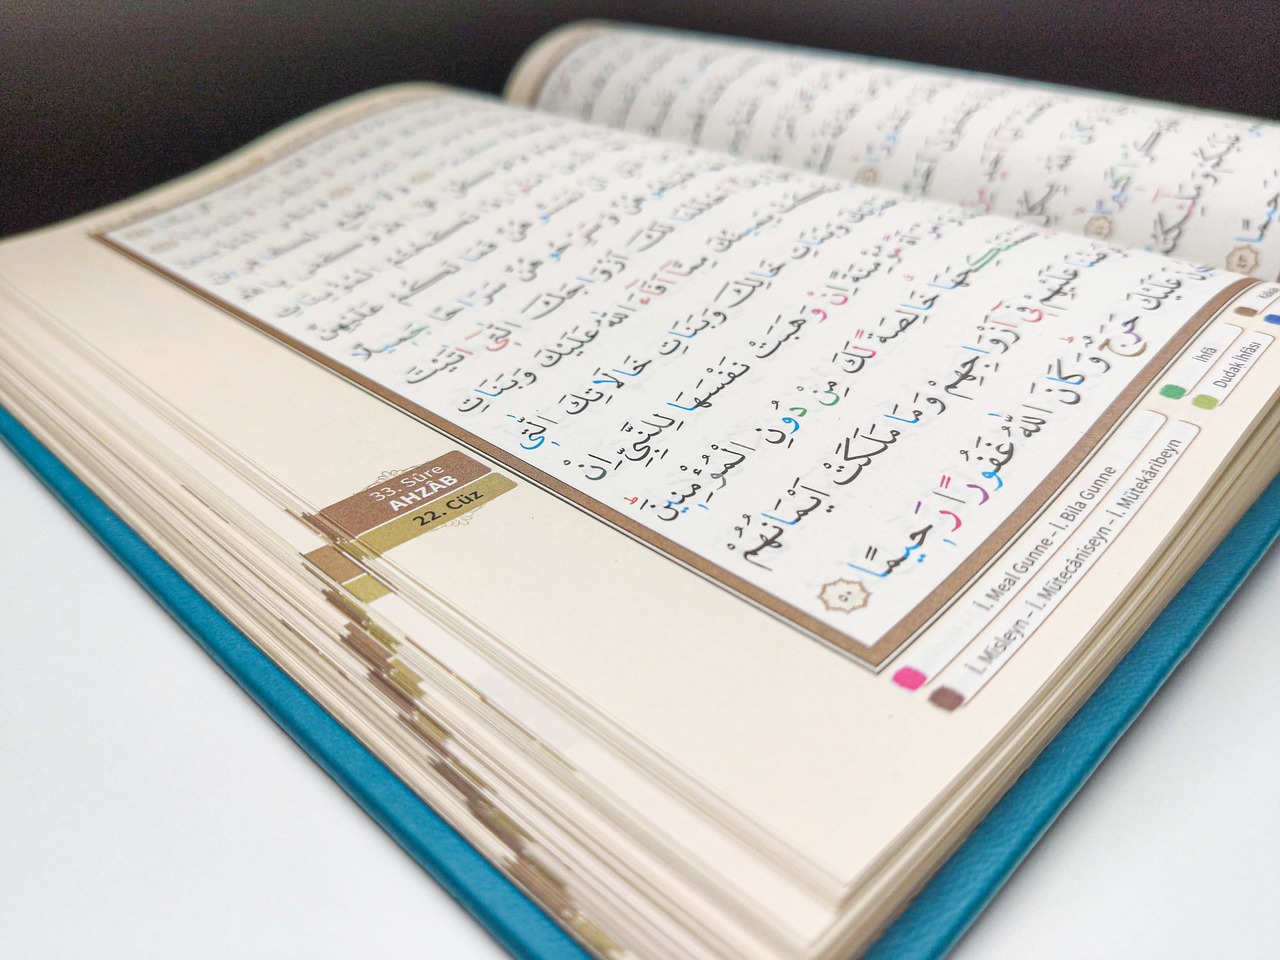 Falmuriyati Qadha Artinya, Surat Al Adiyat Ayat Kedua Lengkap dengan Penjelasannya